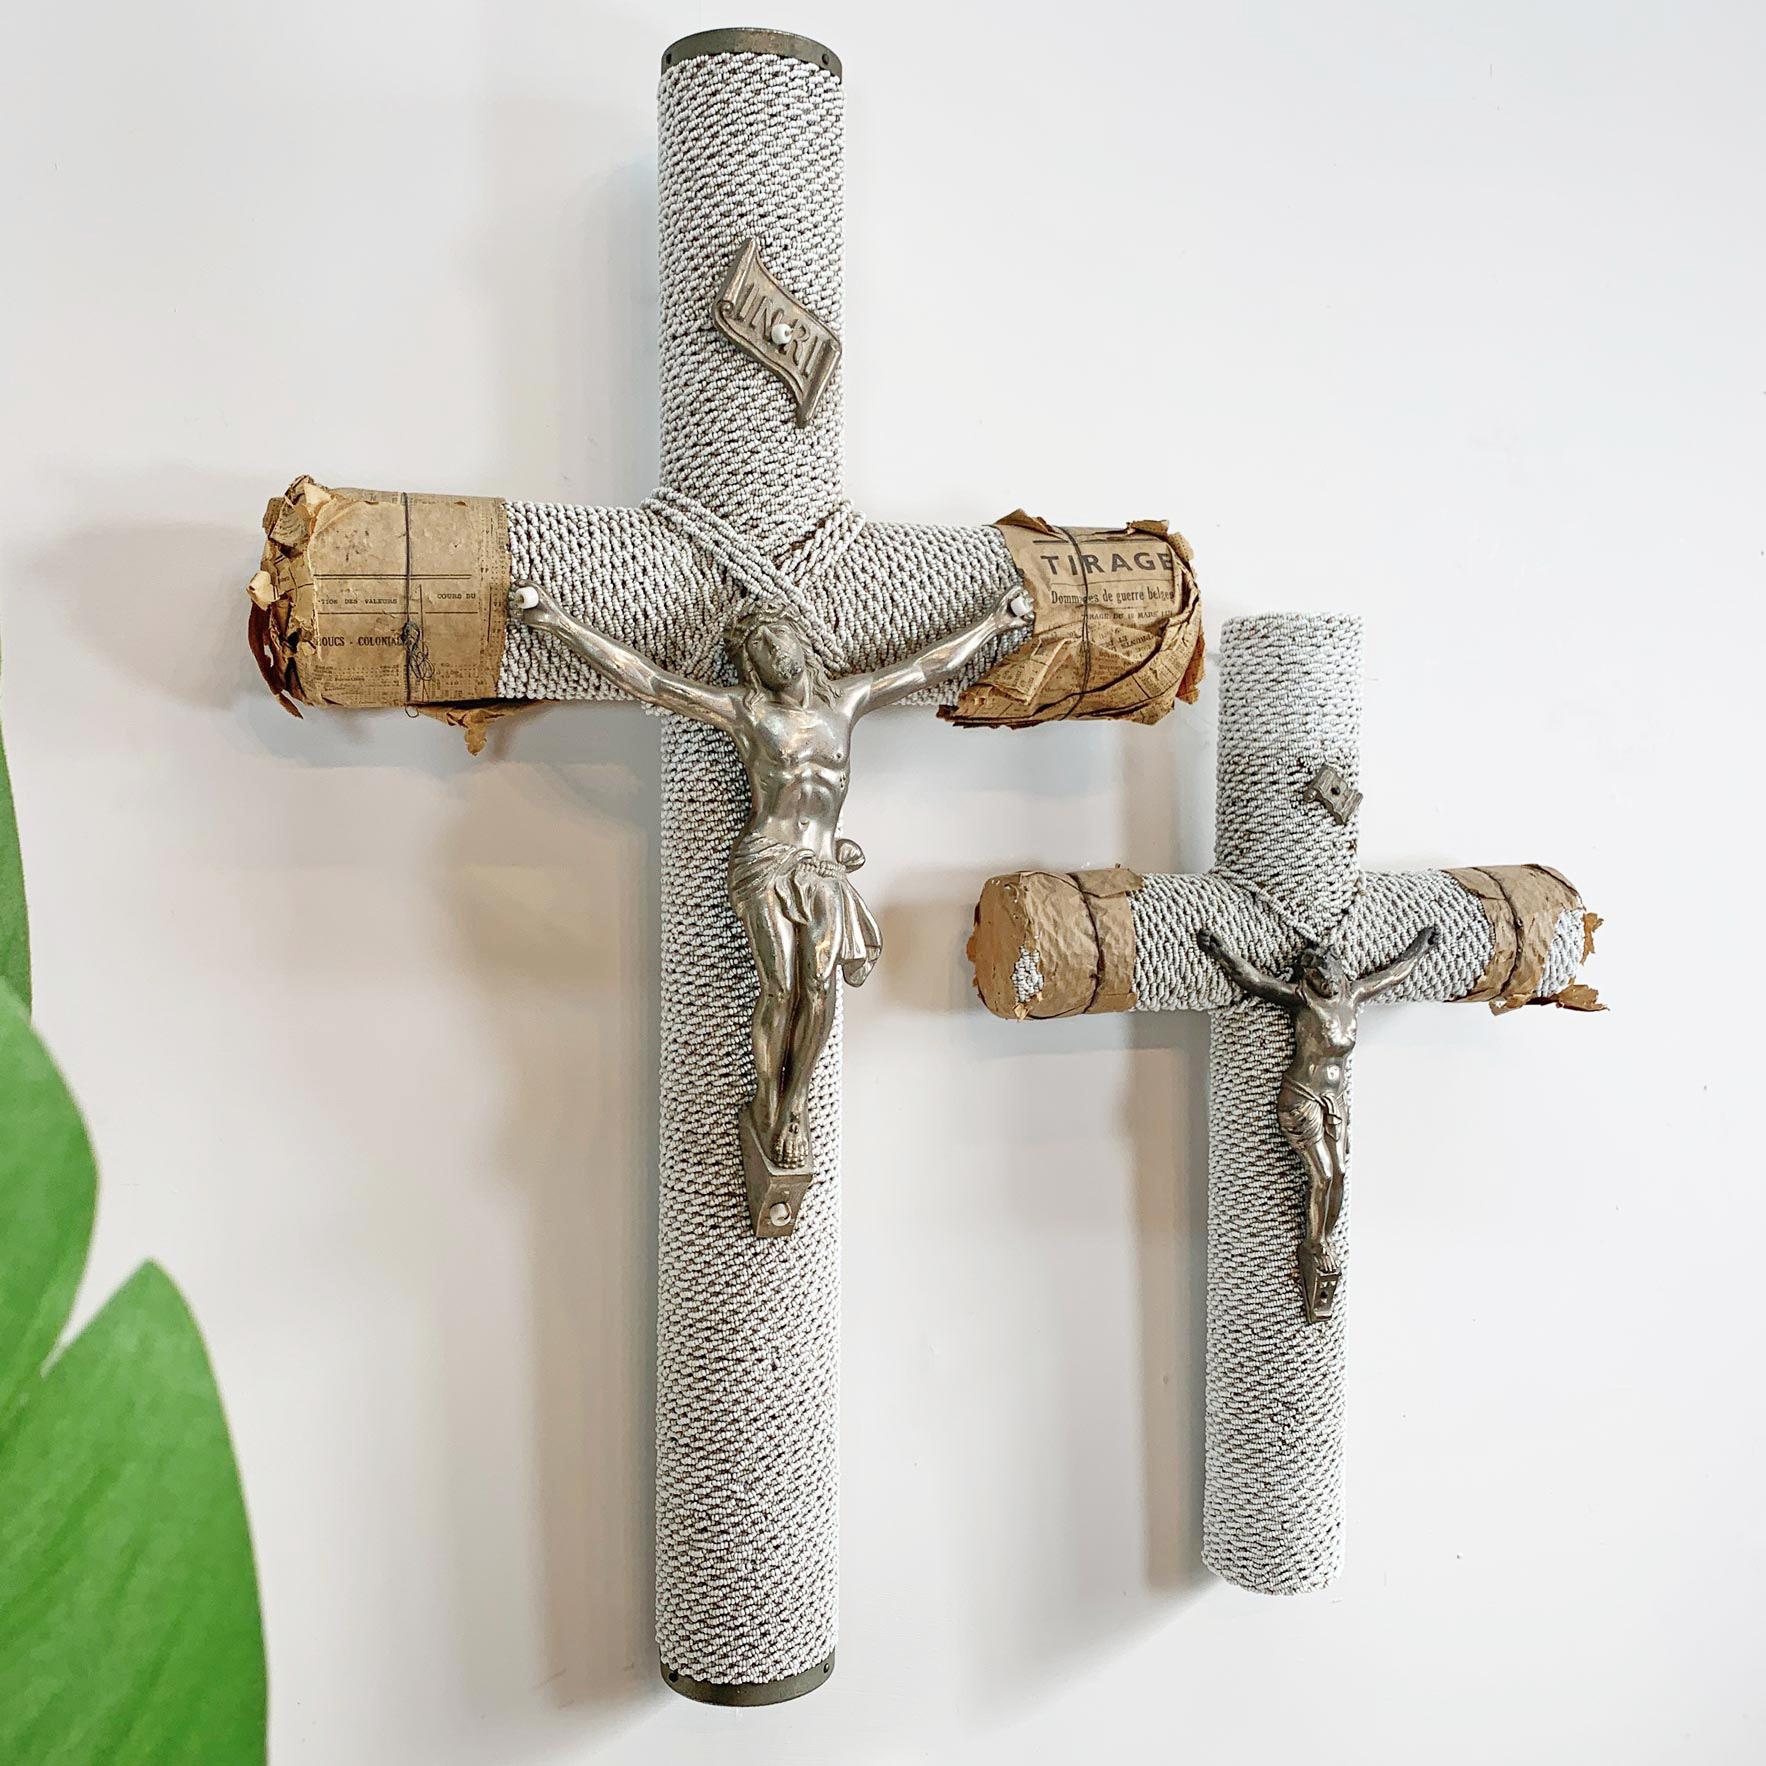 Incroyable paire de crucifix religieux français des années 1930, le corps de chaque crucifix est en bois puis recouvert de milliers de perles de verre opaque enfilées à la main. Au sommet de chaque crucifix se trouve un rouleau de zinc sur lequel on